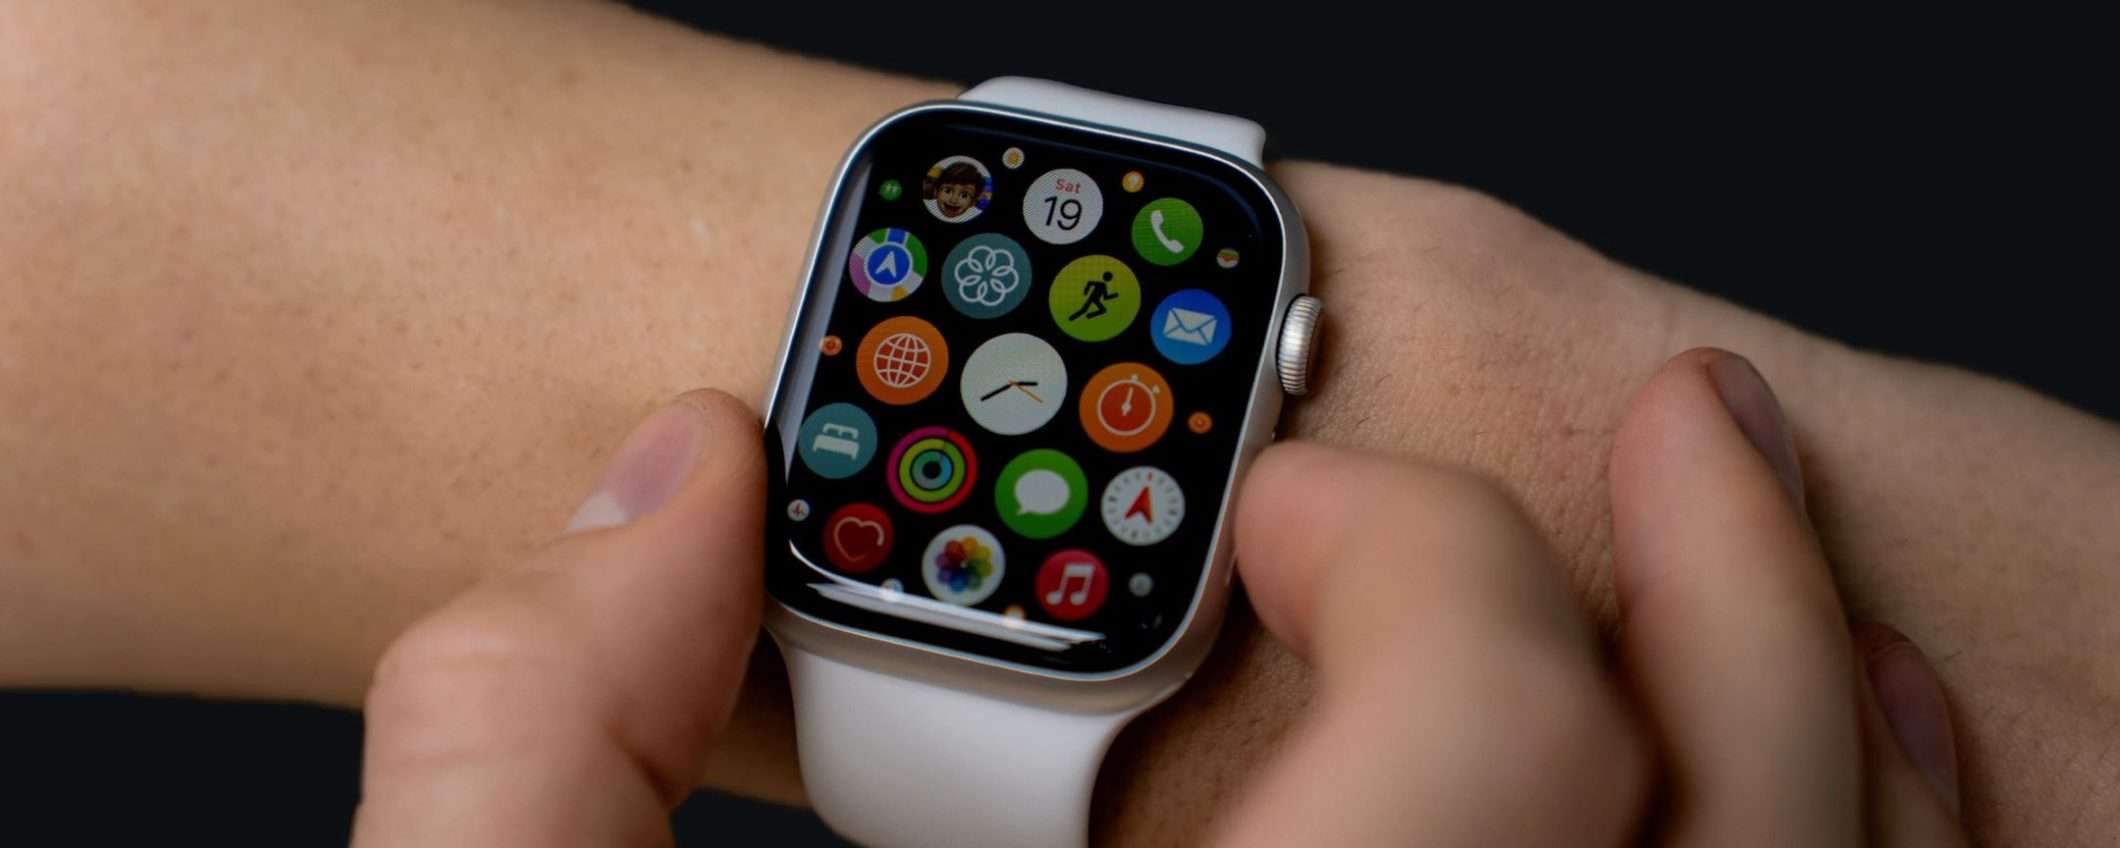 Apple Watch 8 41 mm: Unieuro PIEGA Amazon, stesso prezzo ma con le RATE